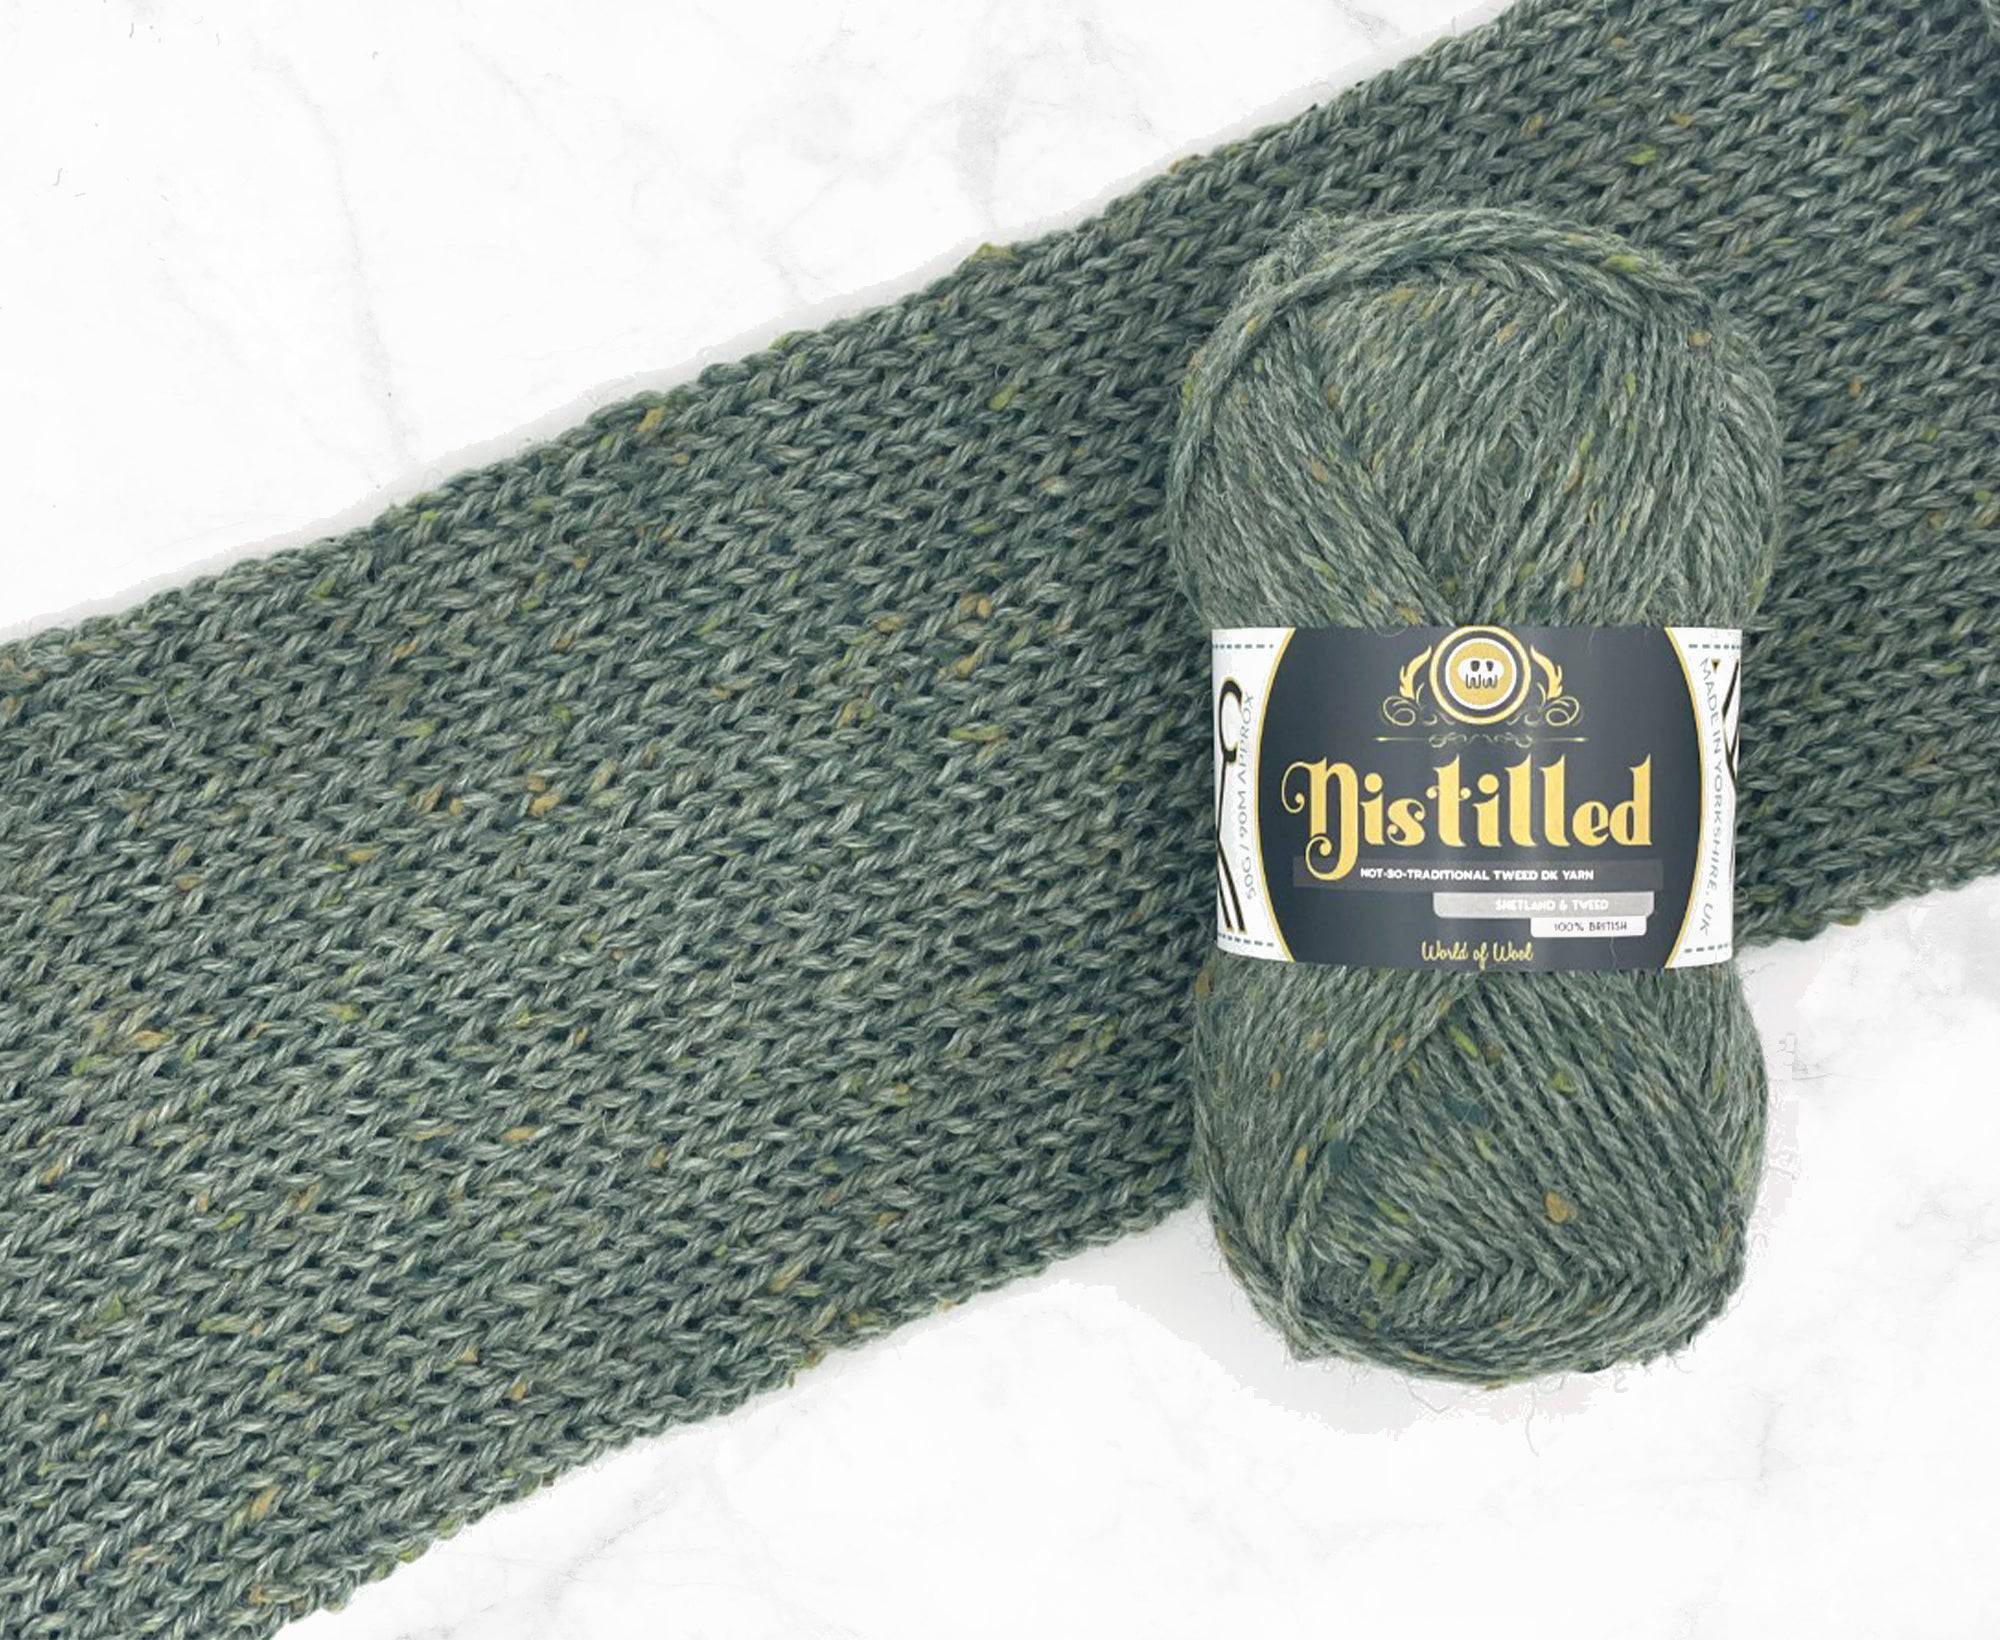 Speyside Distilled DK Yarn Shetland Tweed – World of Wool Trade